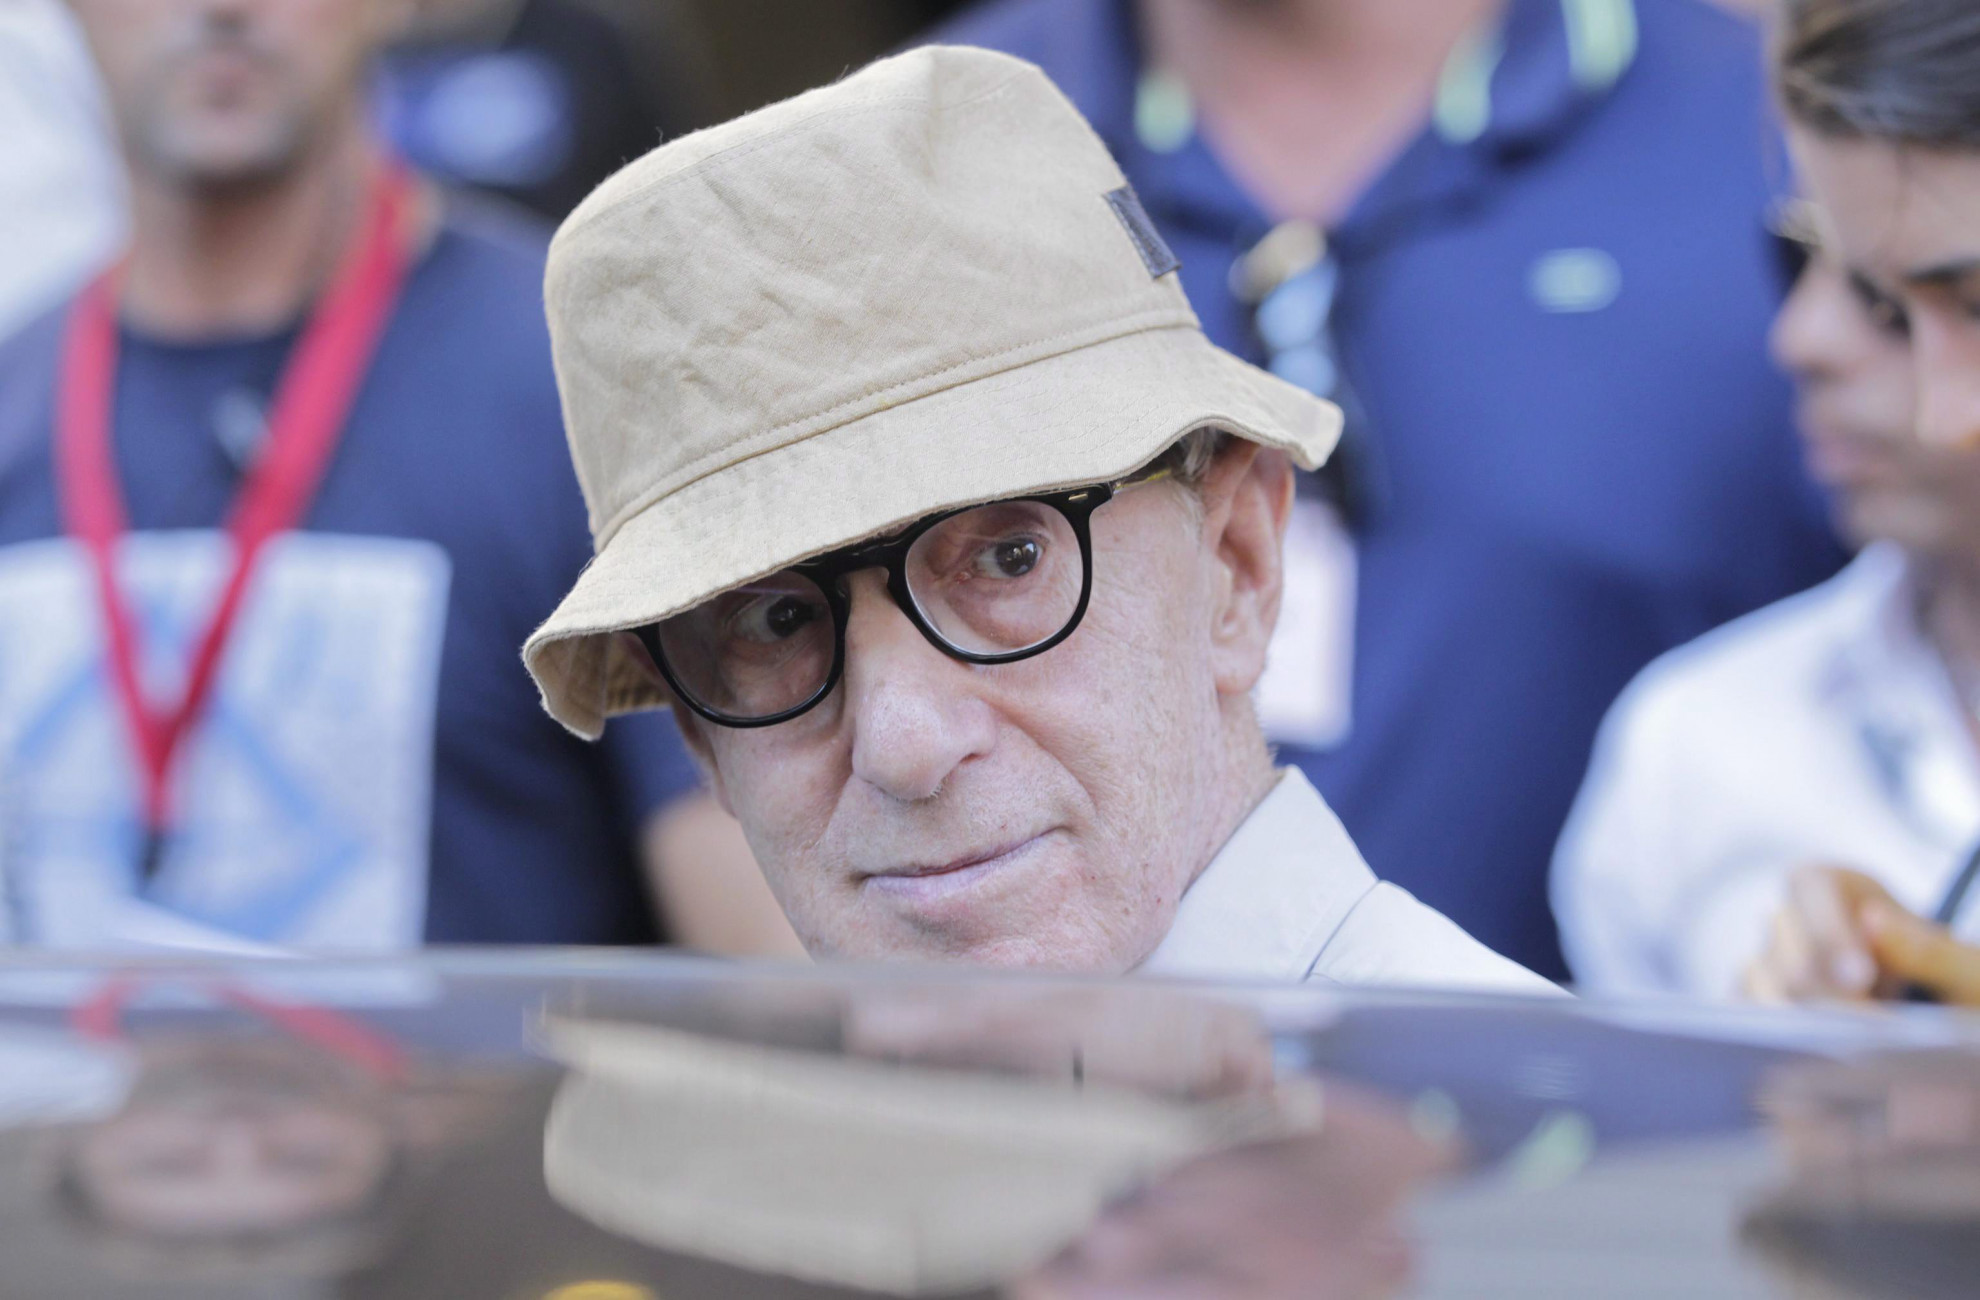 Os velhos de Woody Allen - portaldoenvelhecimento